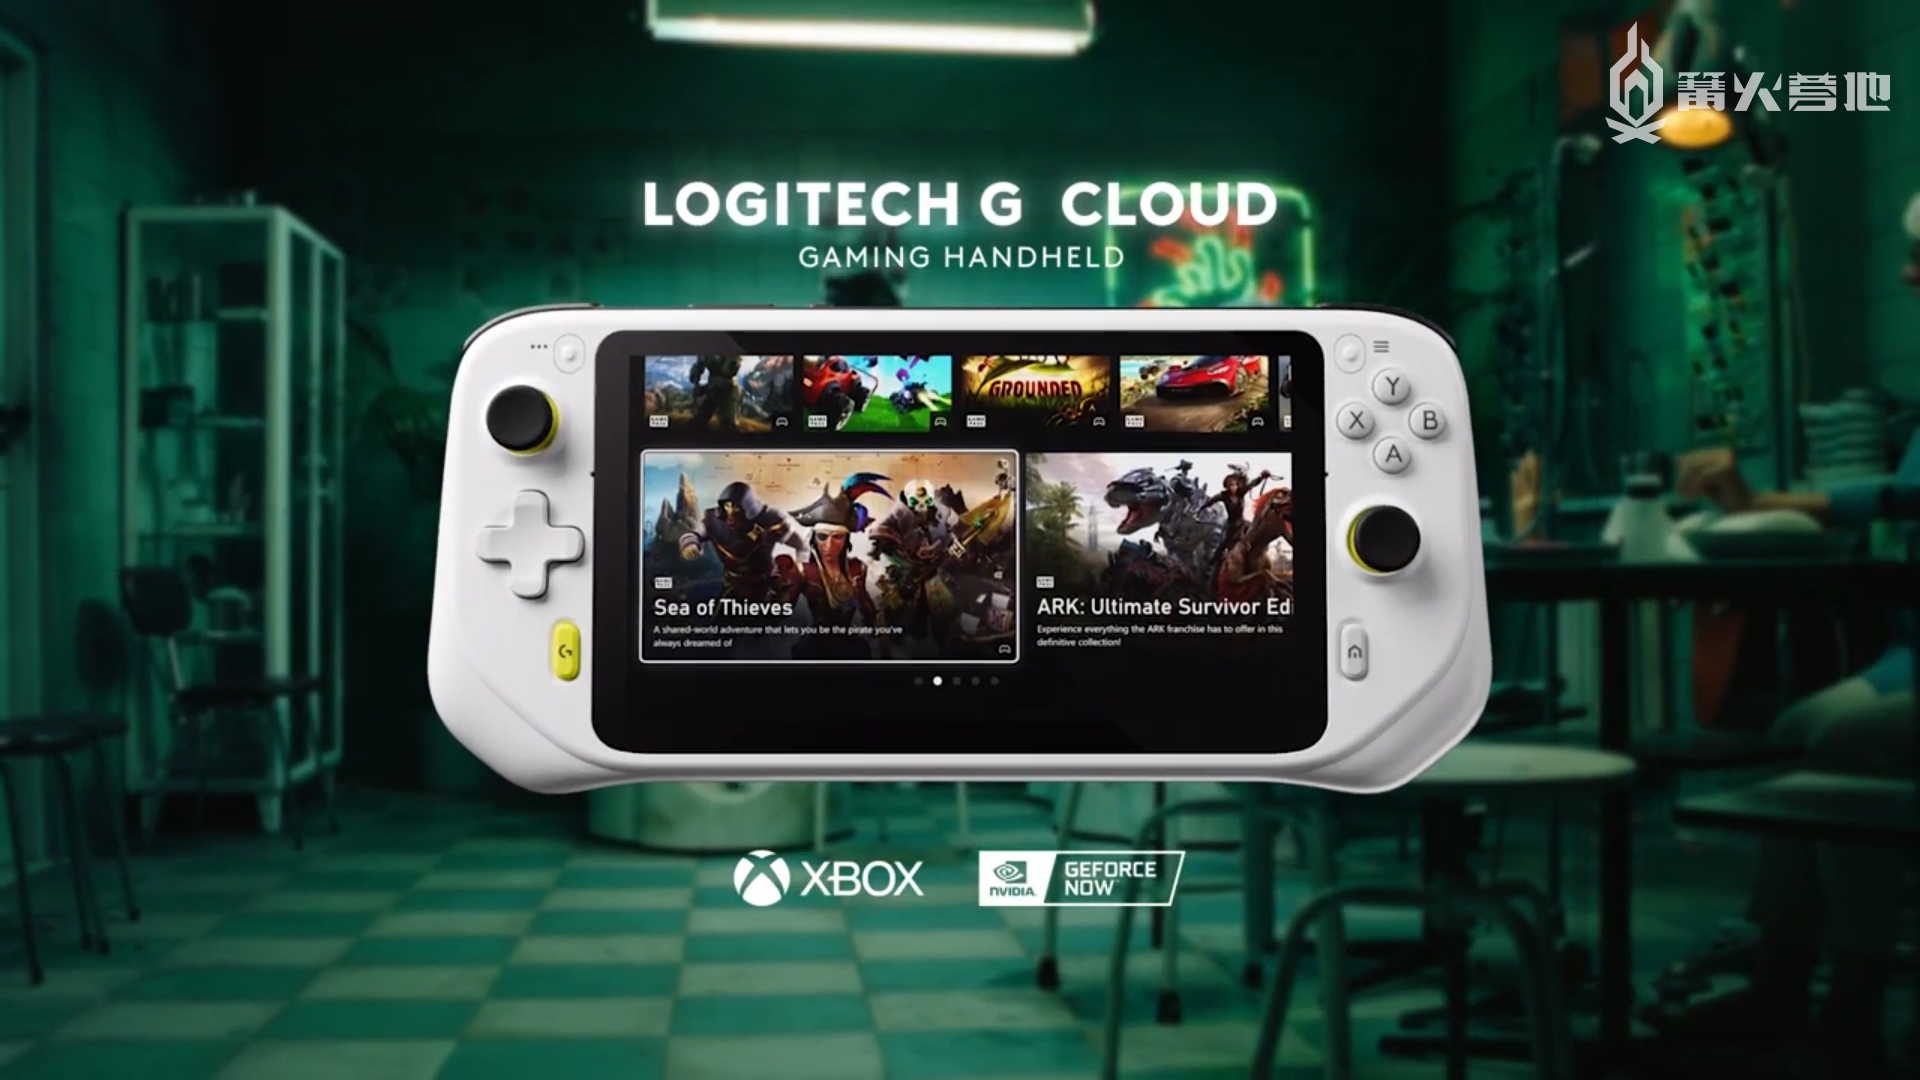 罗技 G Cloud 云游戏掌机 10 月中北美地区上市